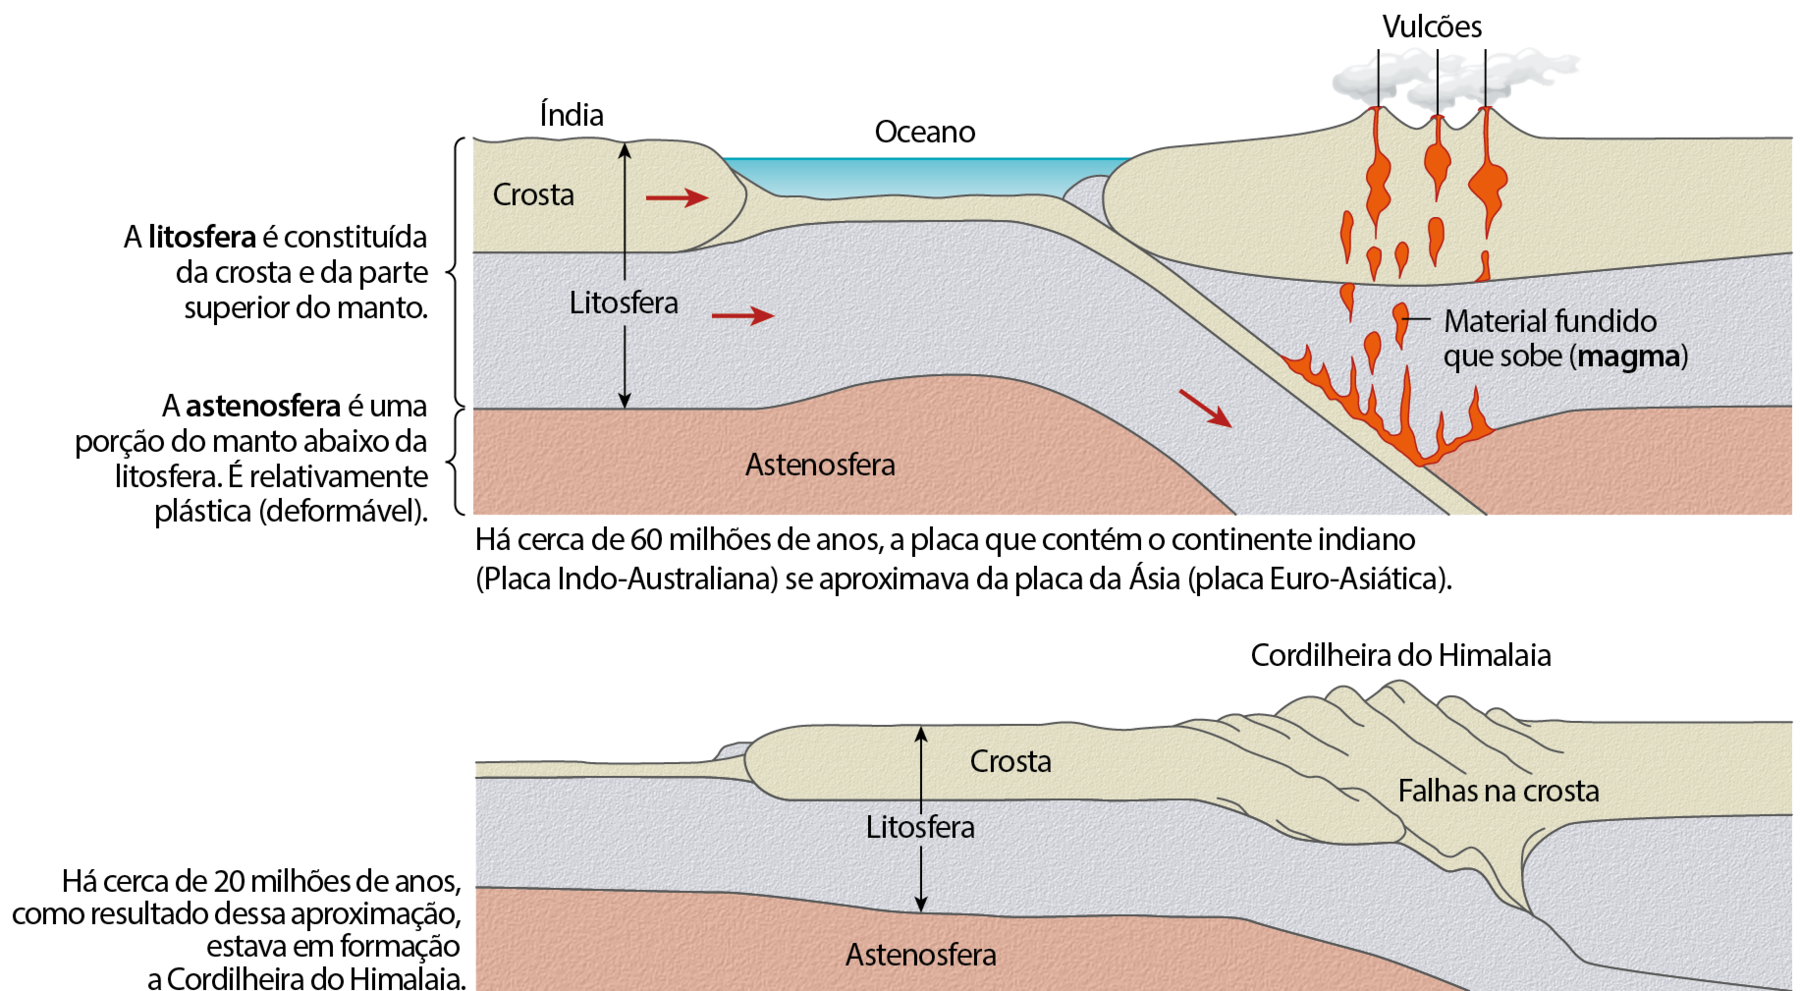 Esquema. Formação da cordilheira do Himalaia. A camada mais interna: A astenosfera é uma porção do manto abaixo da litosfera. É relativamente plástica (deformável). Acima, litosfera: A litosfera é constituída da crosta e da parte superior do manto. A camada da superfície terrestre é a crosta. A crosta e a litosfera, em contato com a outra placa, afundam e penetram na astenosfera, levando à uma progressiva aproximação entre as duas placas. Entre essas duas placas, o oceano. Para à direita, vulcões em erupção. Na camada da litosfera há gotas de magma: material fundido que sobe. Texto: Há cerca de 60 milhões de anos, a placa que contém o continente indiano (Placa Indo-Australiana) se aproximava da placa da Ásia (placa Euro-Asiática). Abaixo, evidenciando a passagem do tempo. Há um encontro entre duas placas da litosfera, com a supressão do oceano, formando uma falha na crosta, dando origem a Cordilheira do Himalaia. Texto: Há cerca de 20 milhões de anos, como resultado dessa aproximação, estava em formação a Cordilheira do Himalaia.